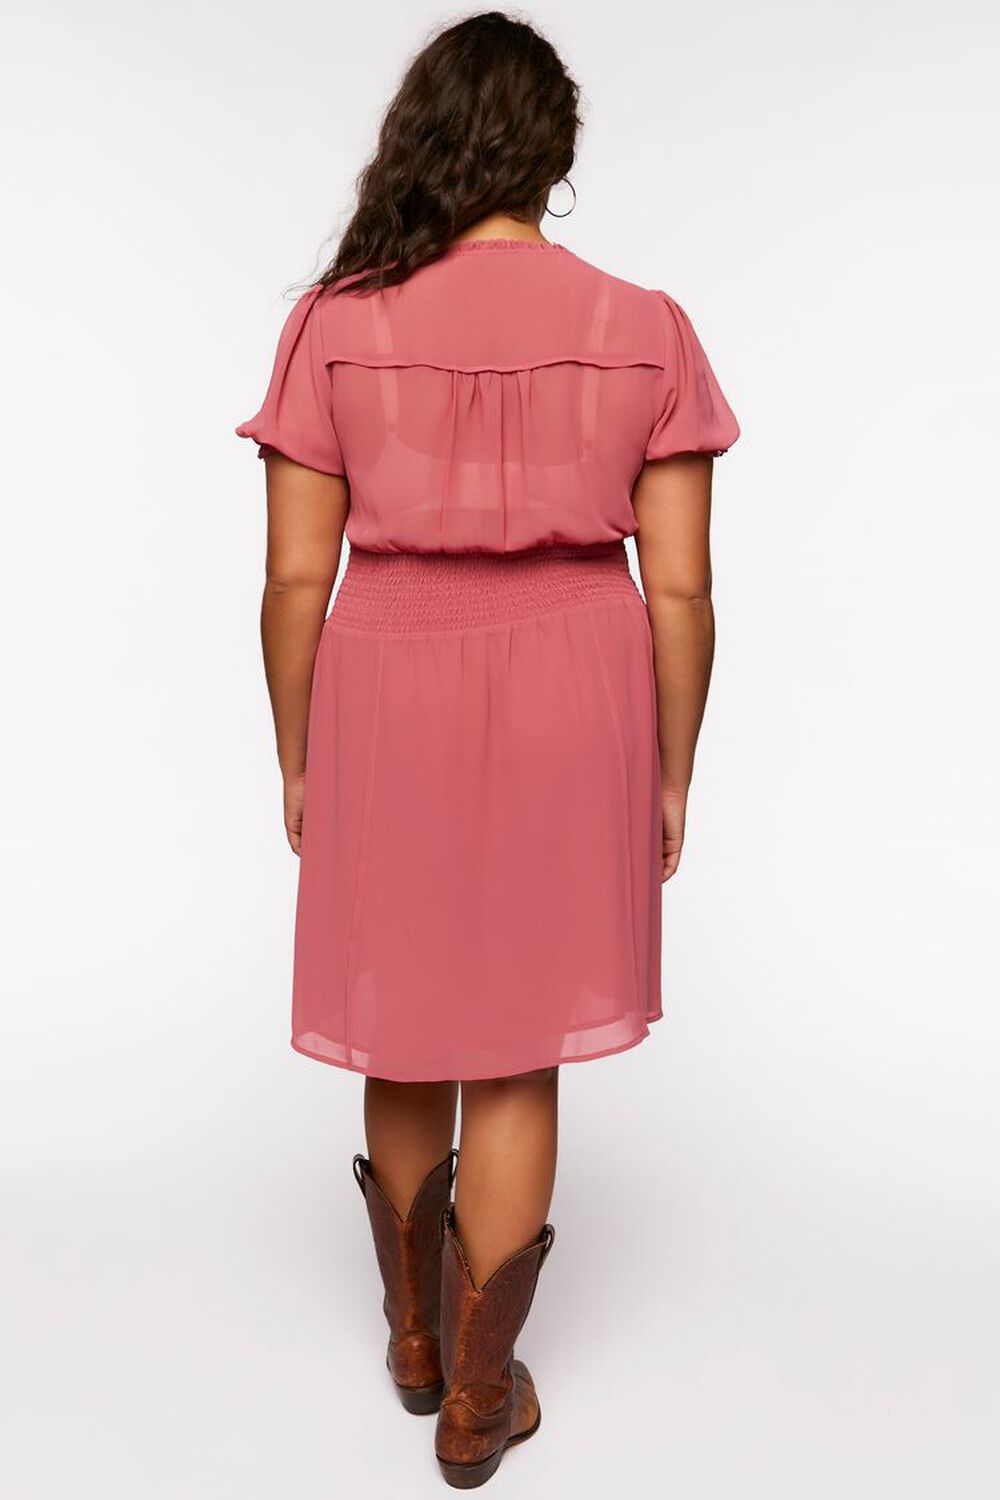 DUSTY PINK Plus Size Chiffon Puff-Sleeve Mini Dress, image 3